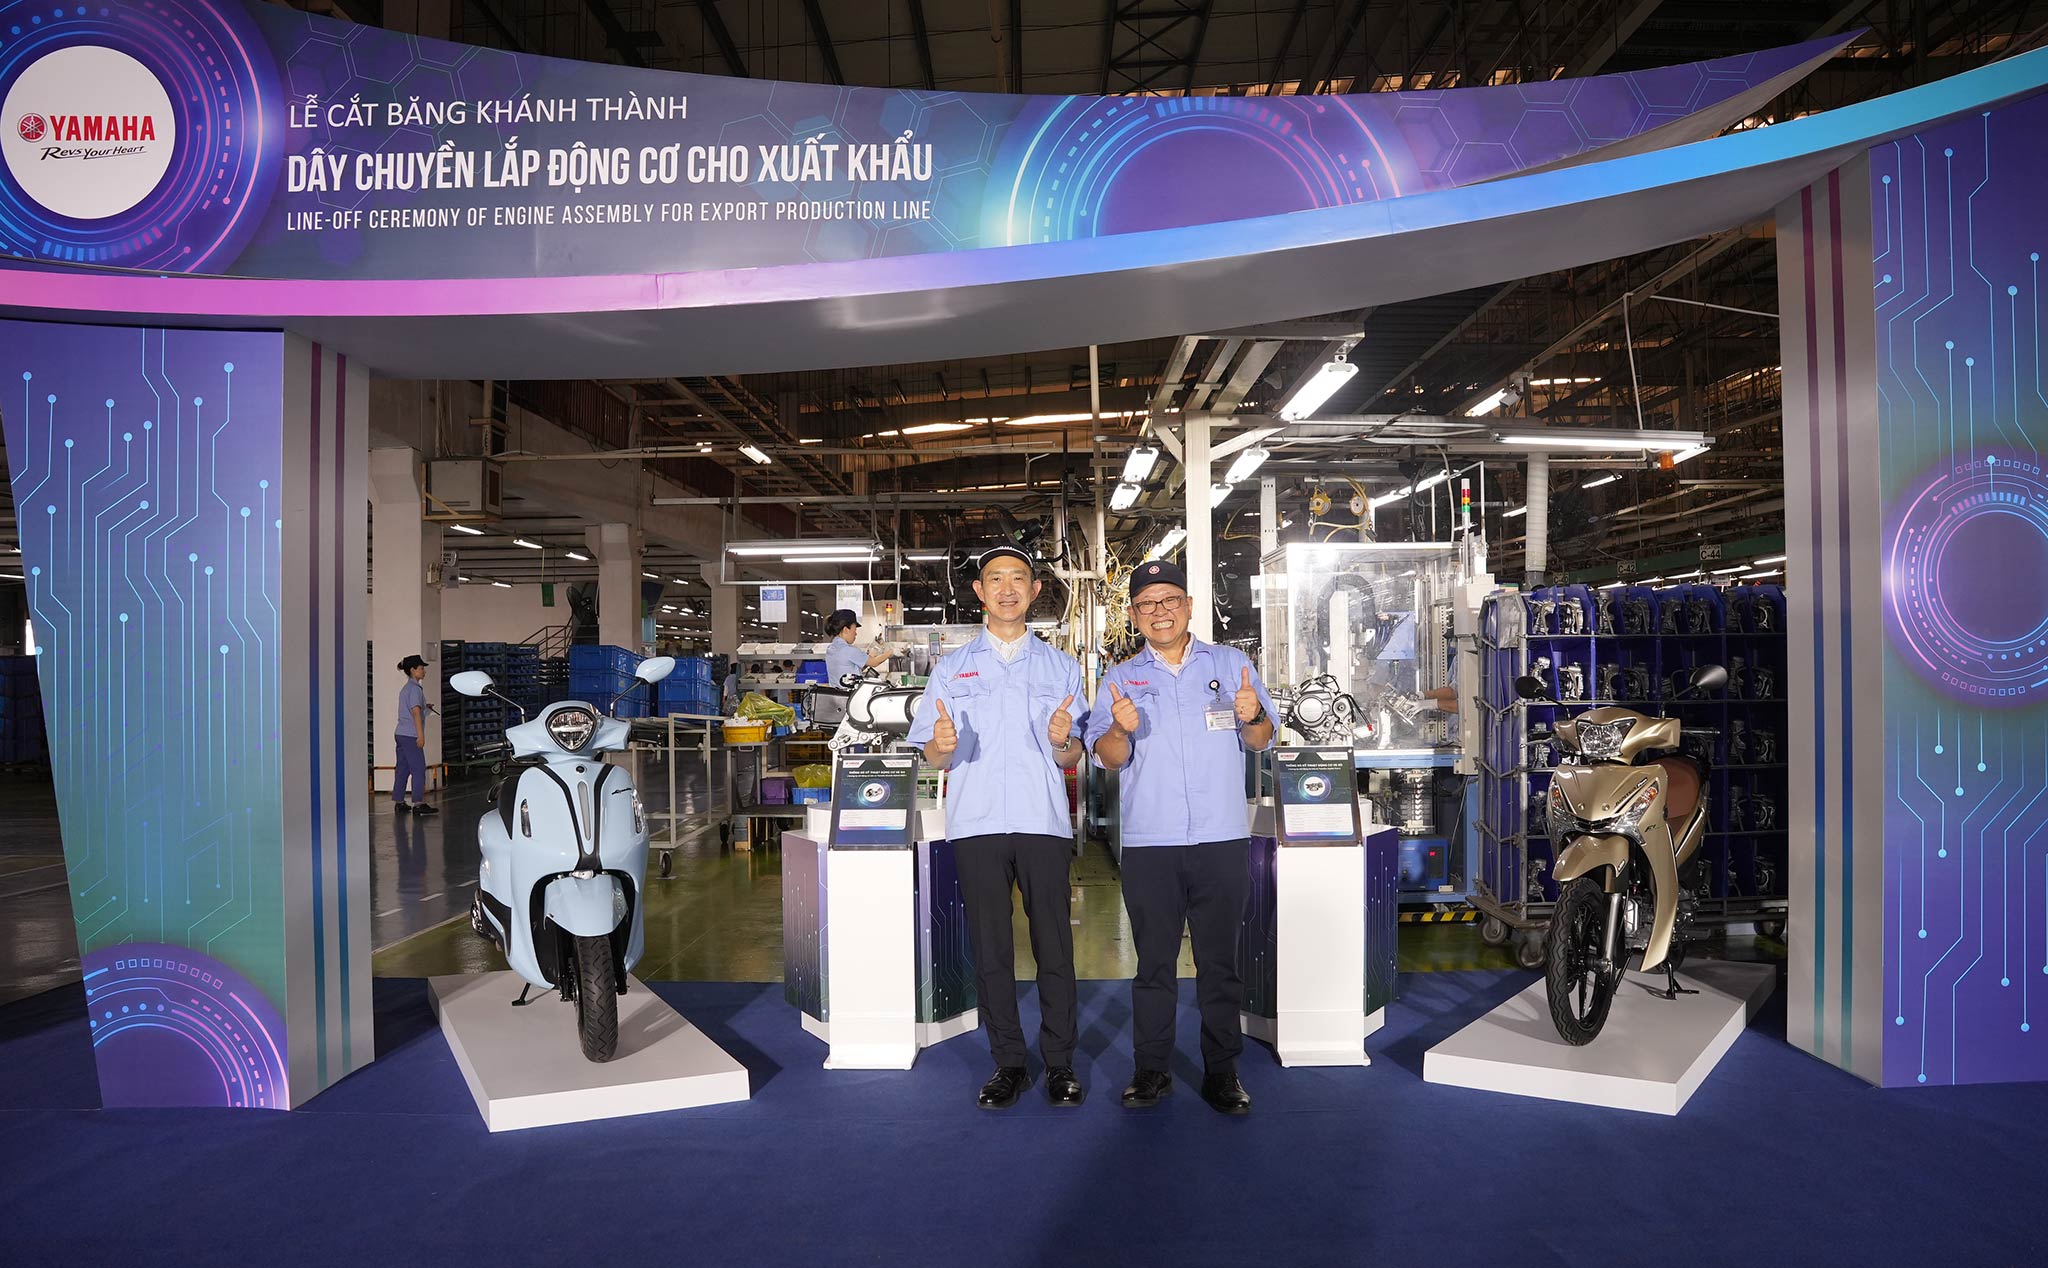 Yamaha Motor Việt Nam lắp ráp động cơ xuất khẩu đi Thái Lan, tương lai là ASEAN